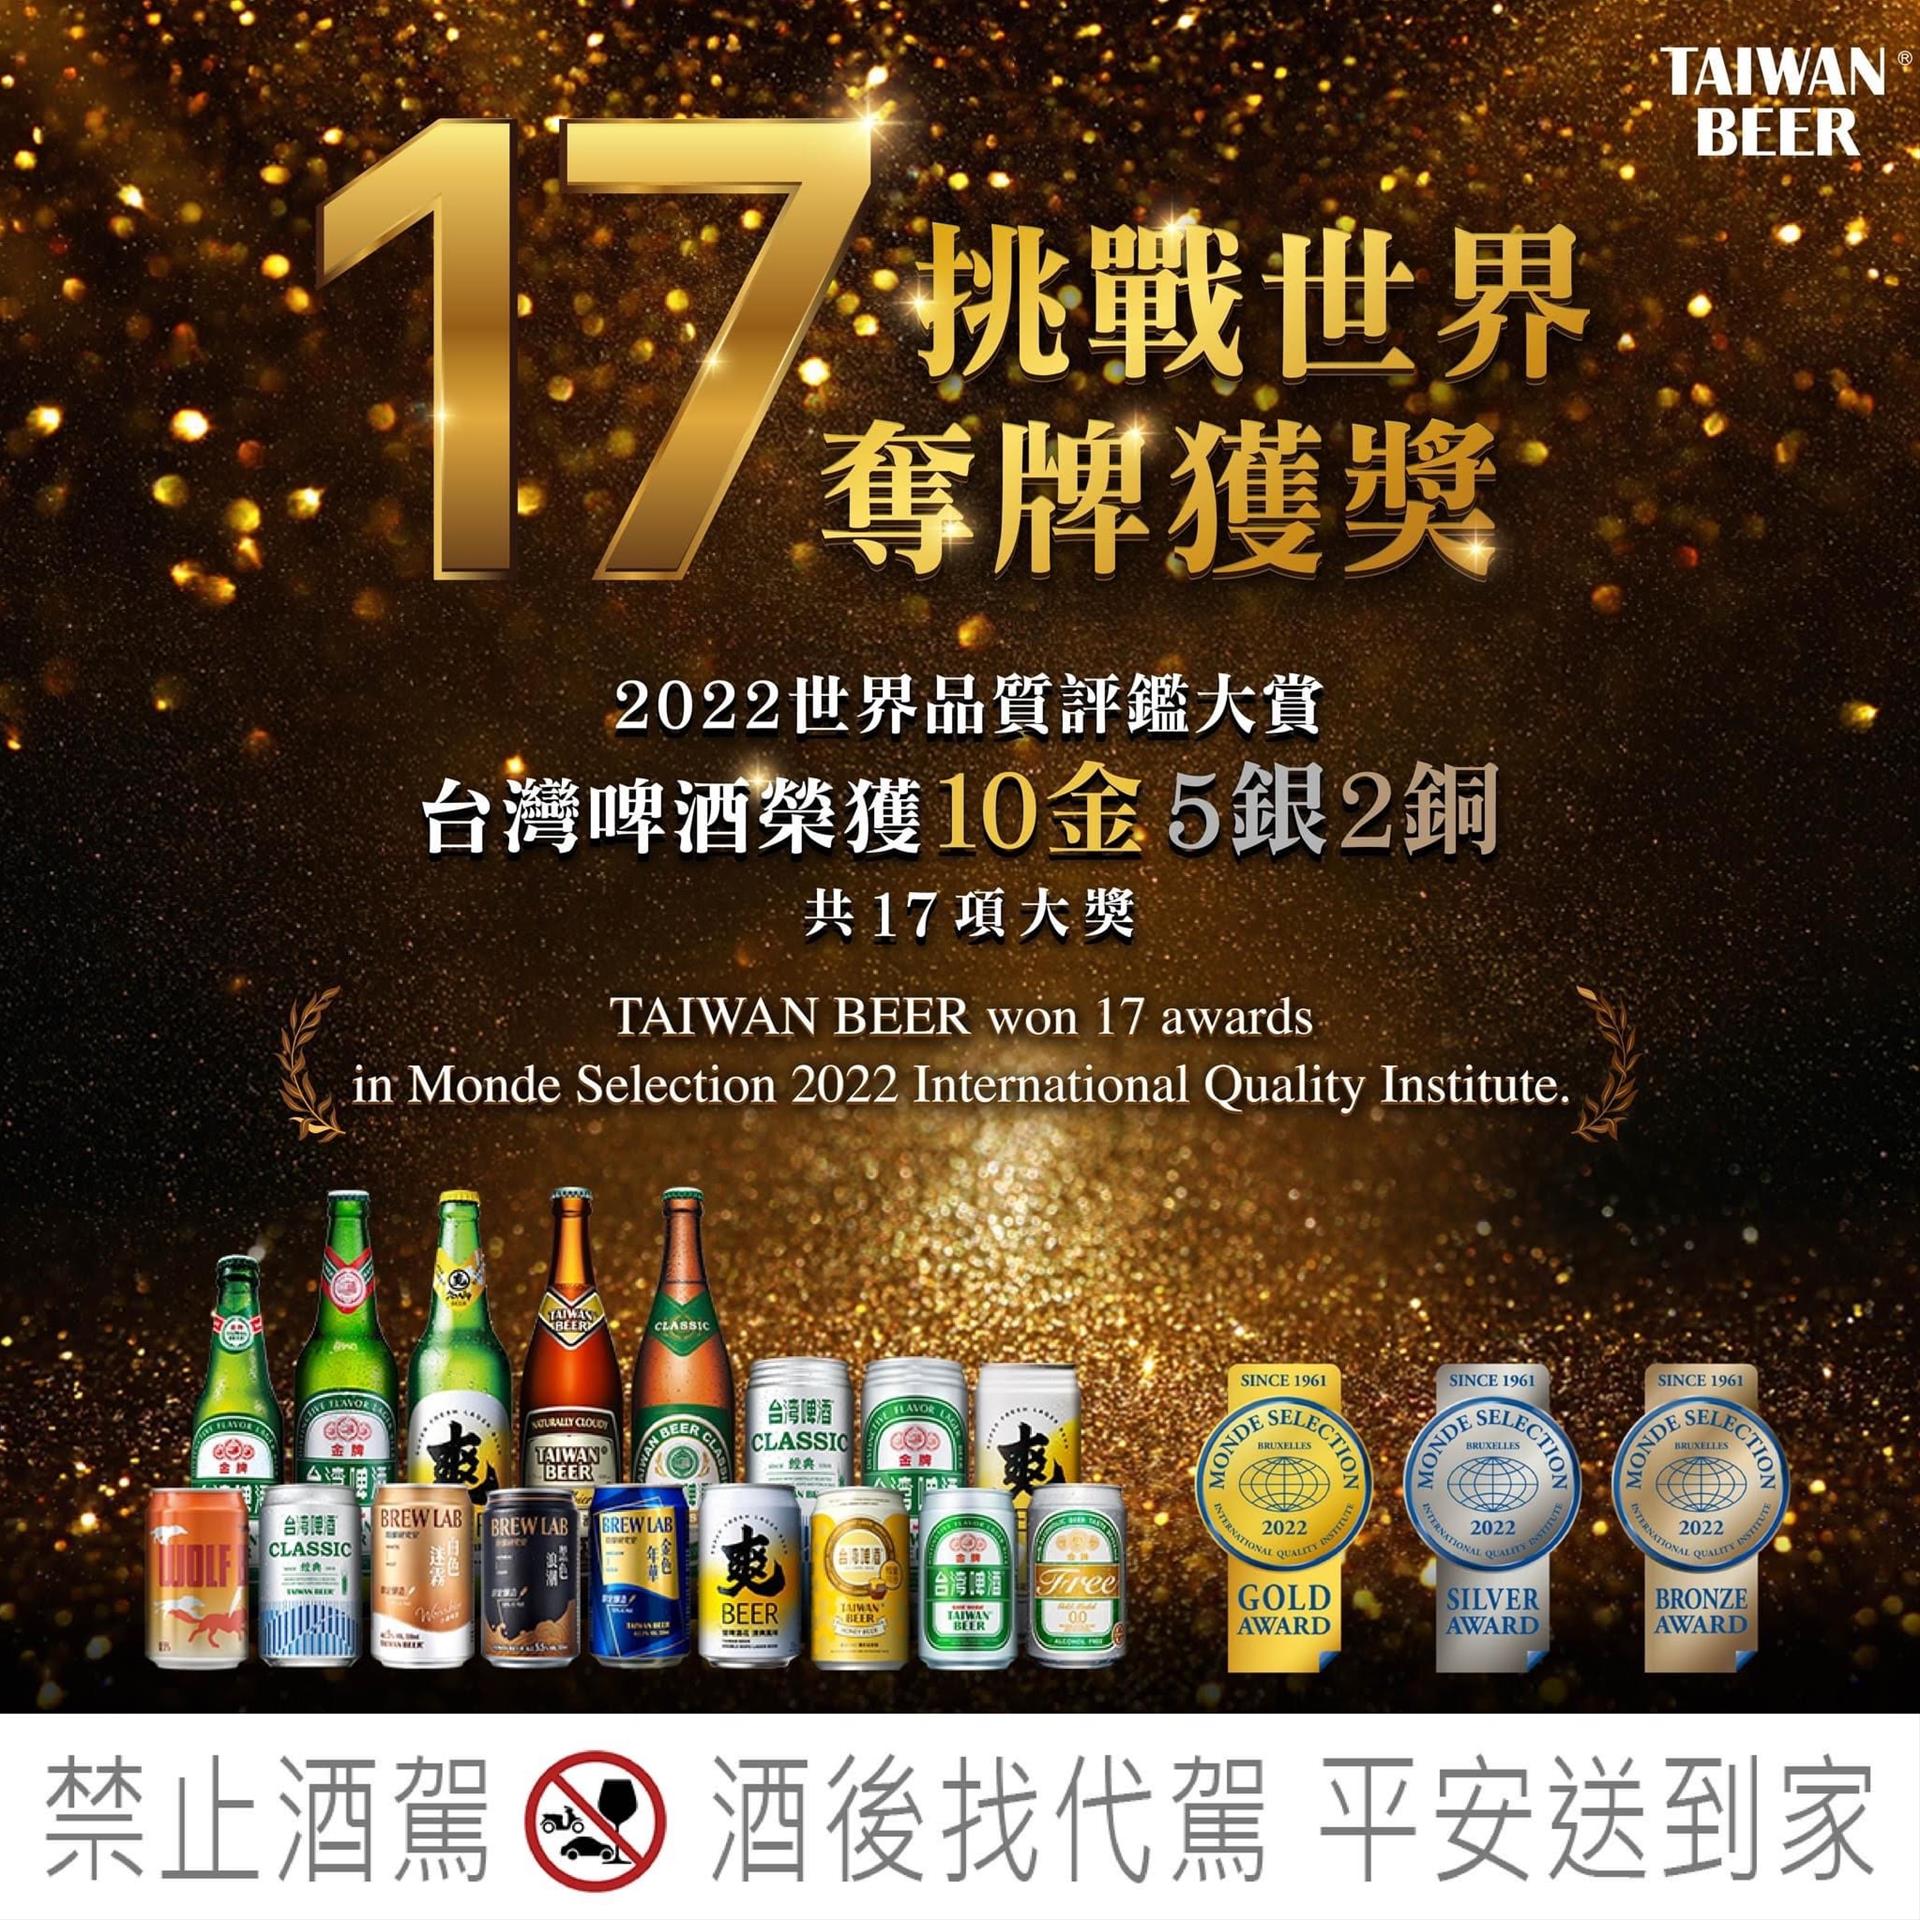 2022世界品質評鑑大賞 台啤拿下17項大獎啦‼｜ 世華國際酒公司